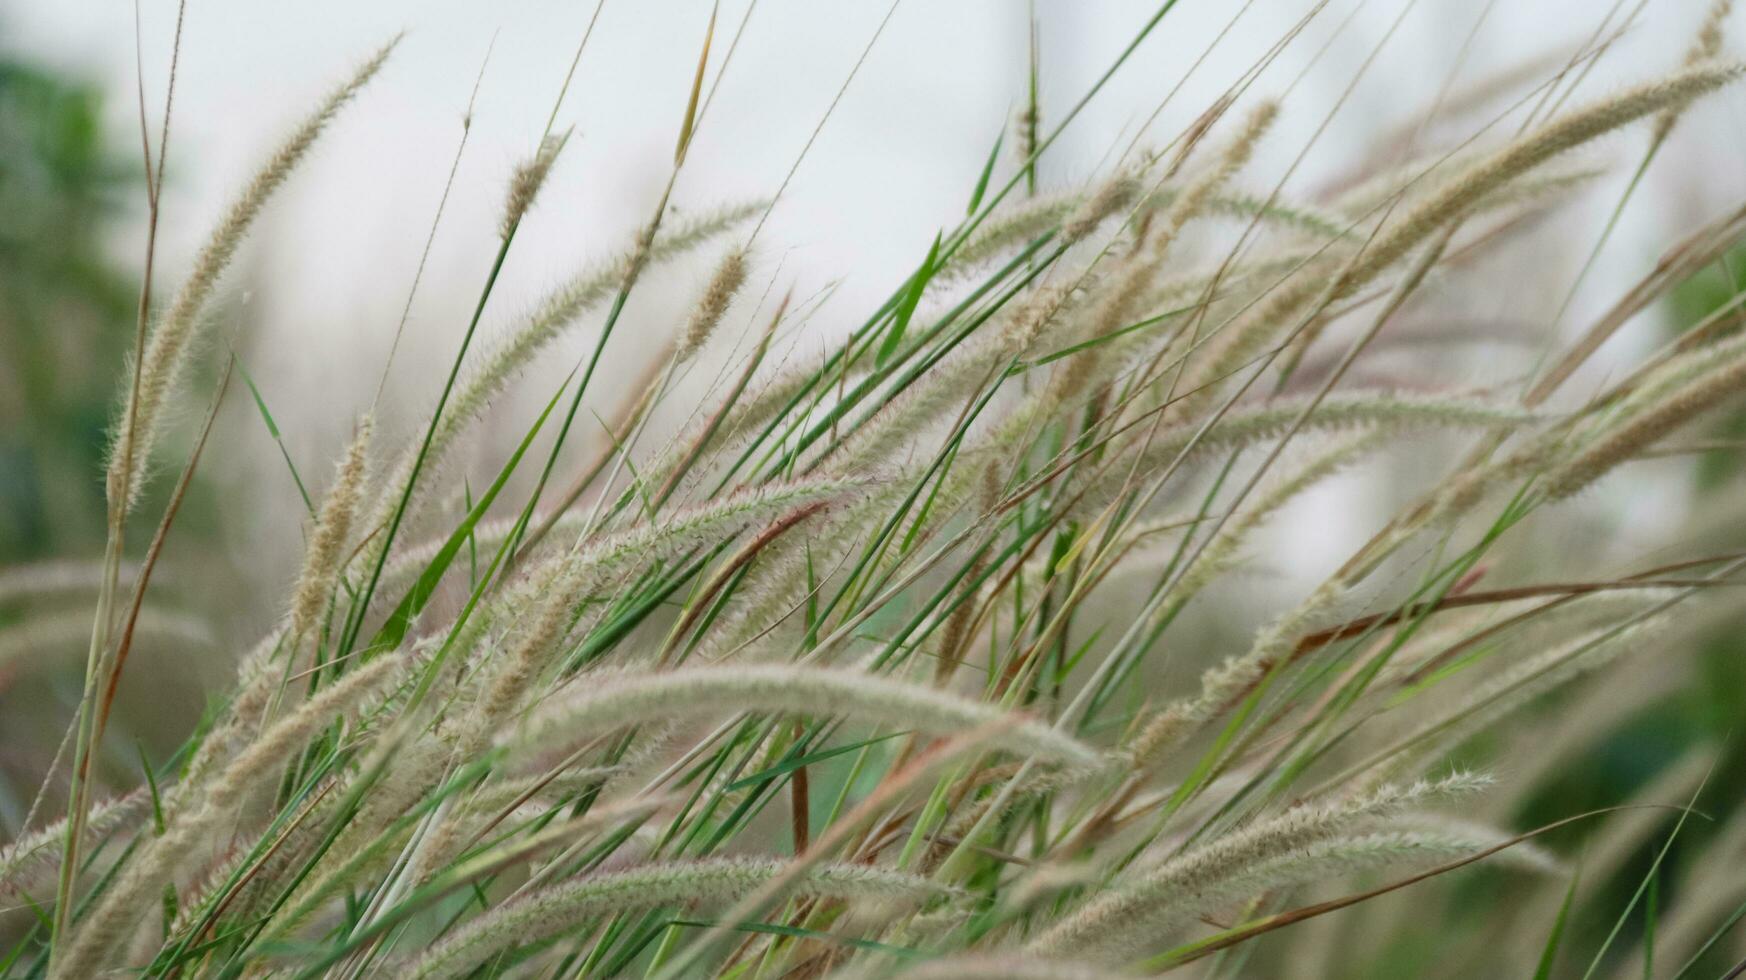 Feder Pennisetum Gras auf verwischen Hintergrund foto